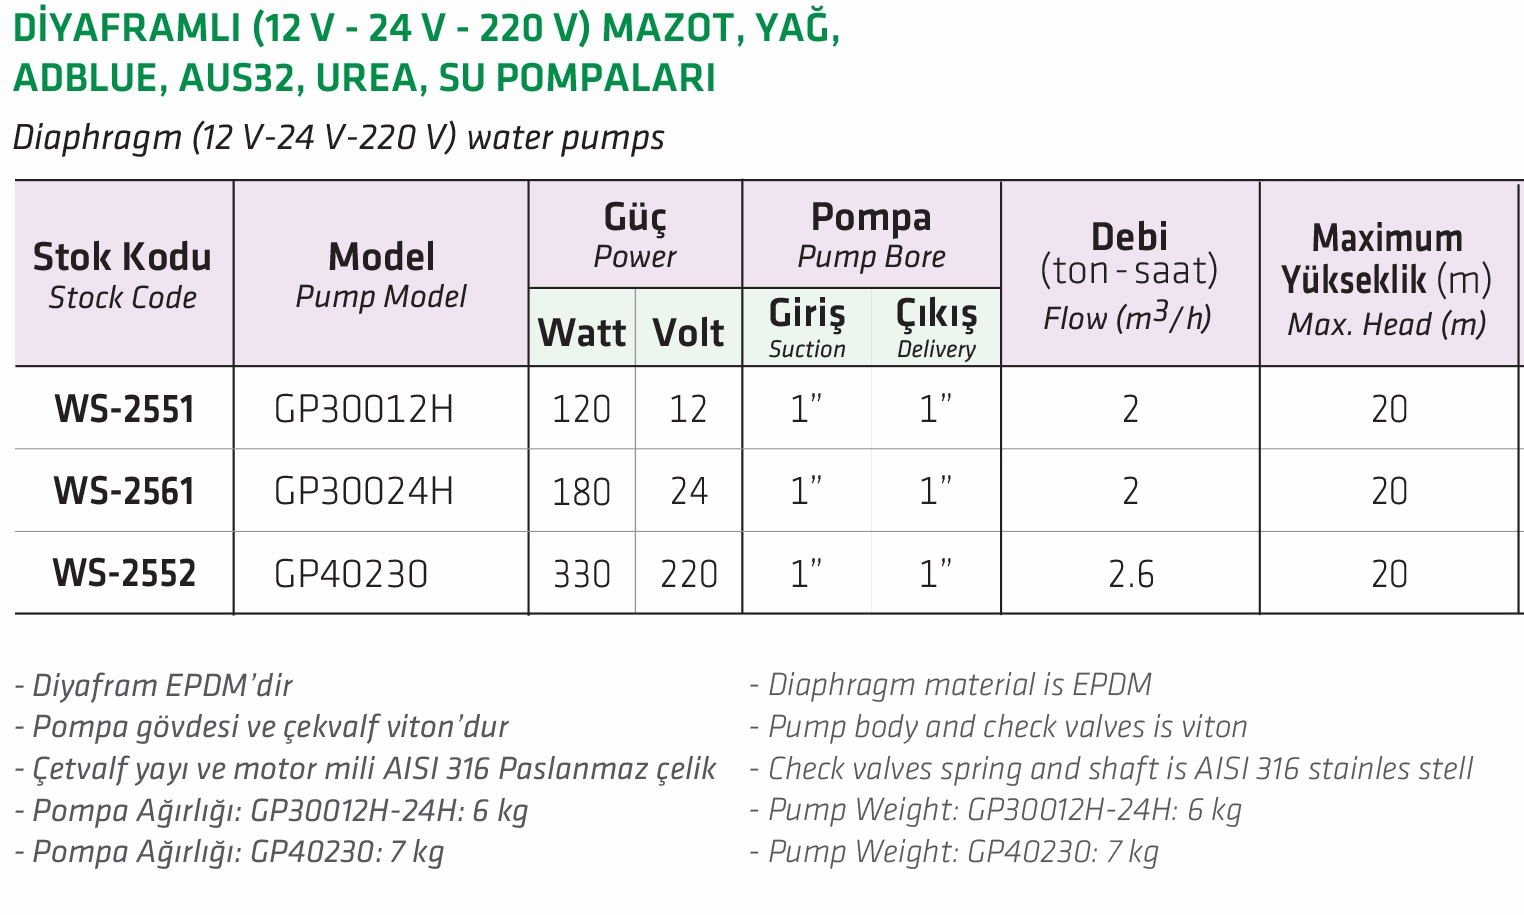 Water Sound GP40230 Diyaframlı 220V  Mazot, Yağ, Adblue, Aus32, Urea, Su Pompası